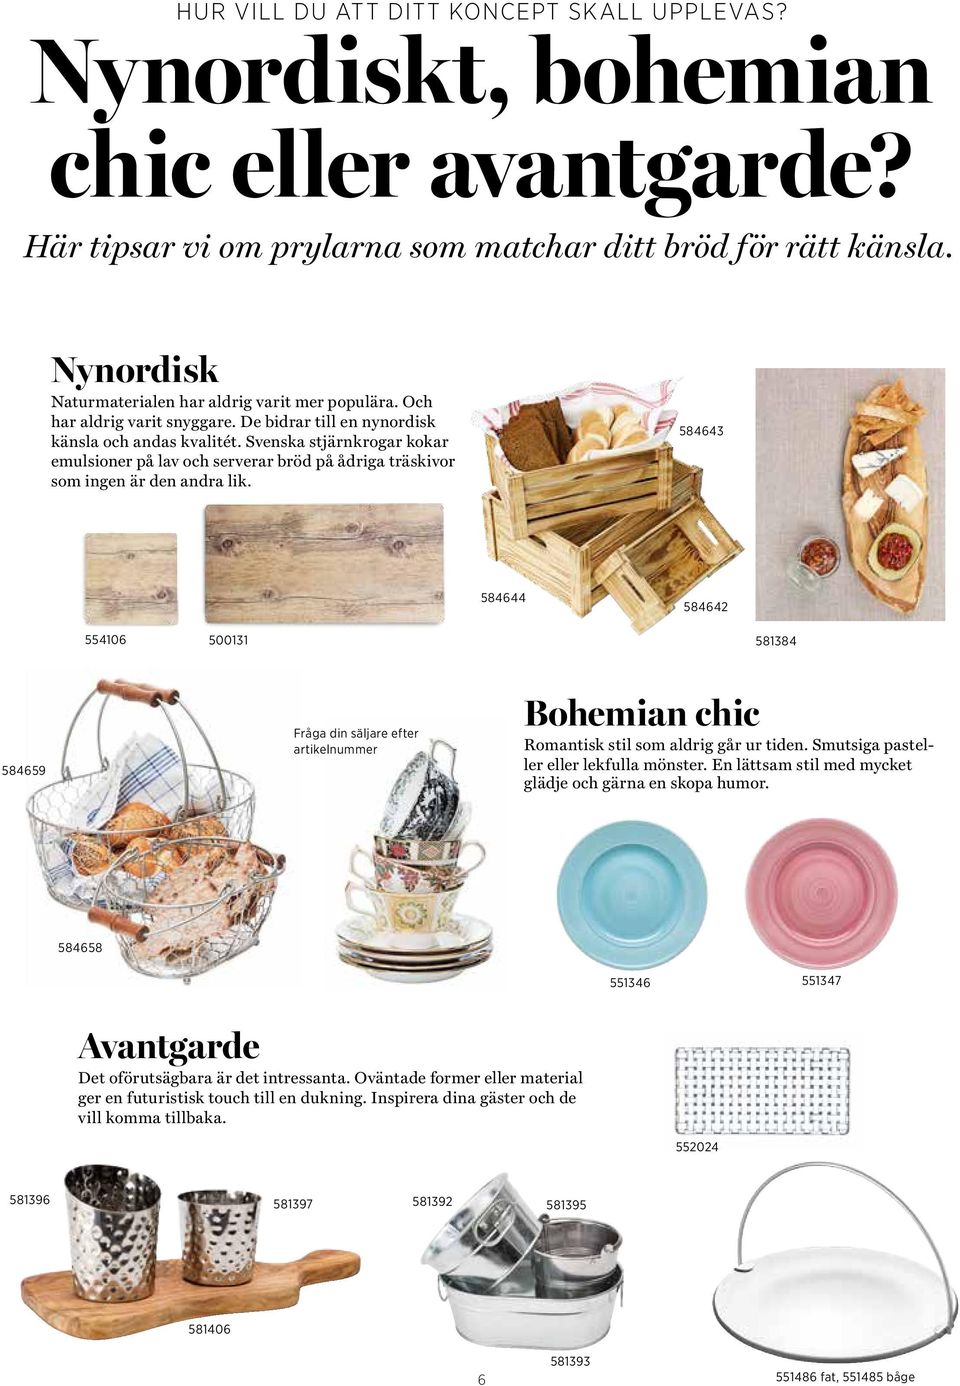 Svenska stjärnkrogar kokar emulsioner på lav och serverar bröd på ådriga träskivor som ingen är den andra lik.